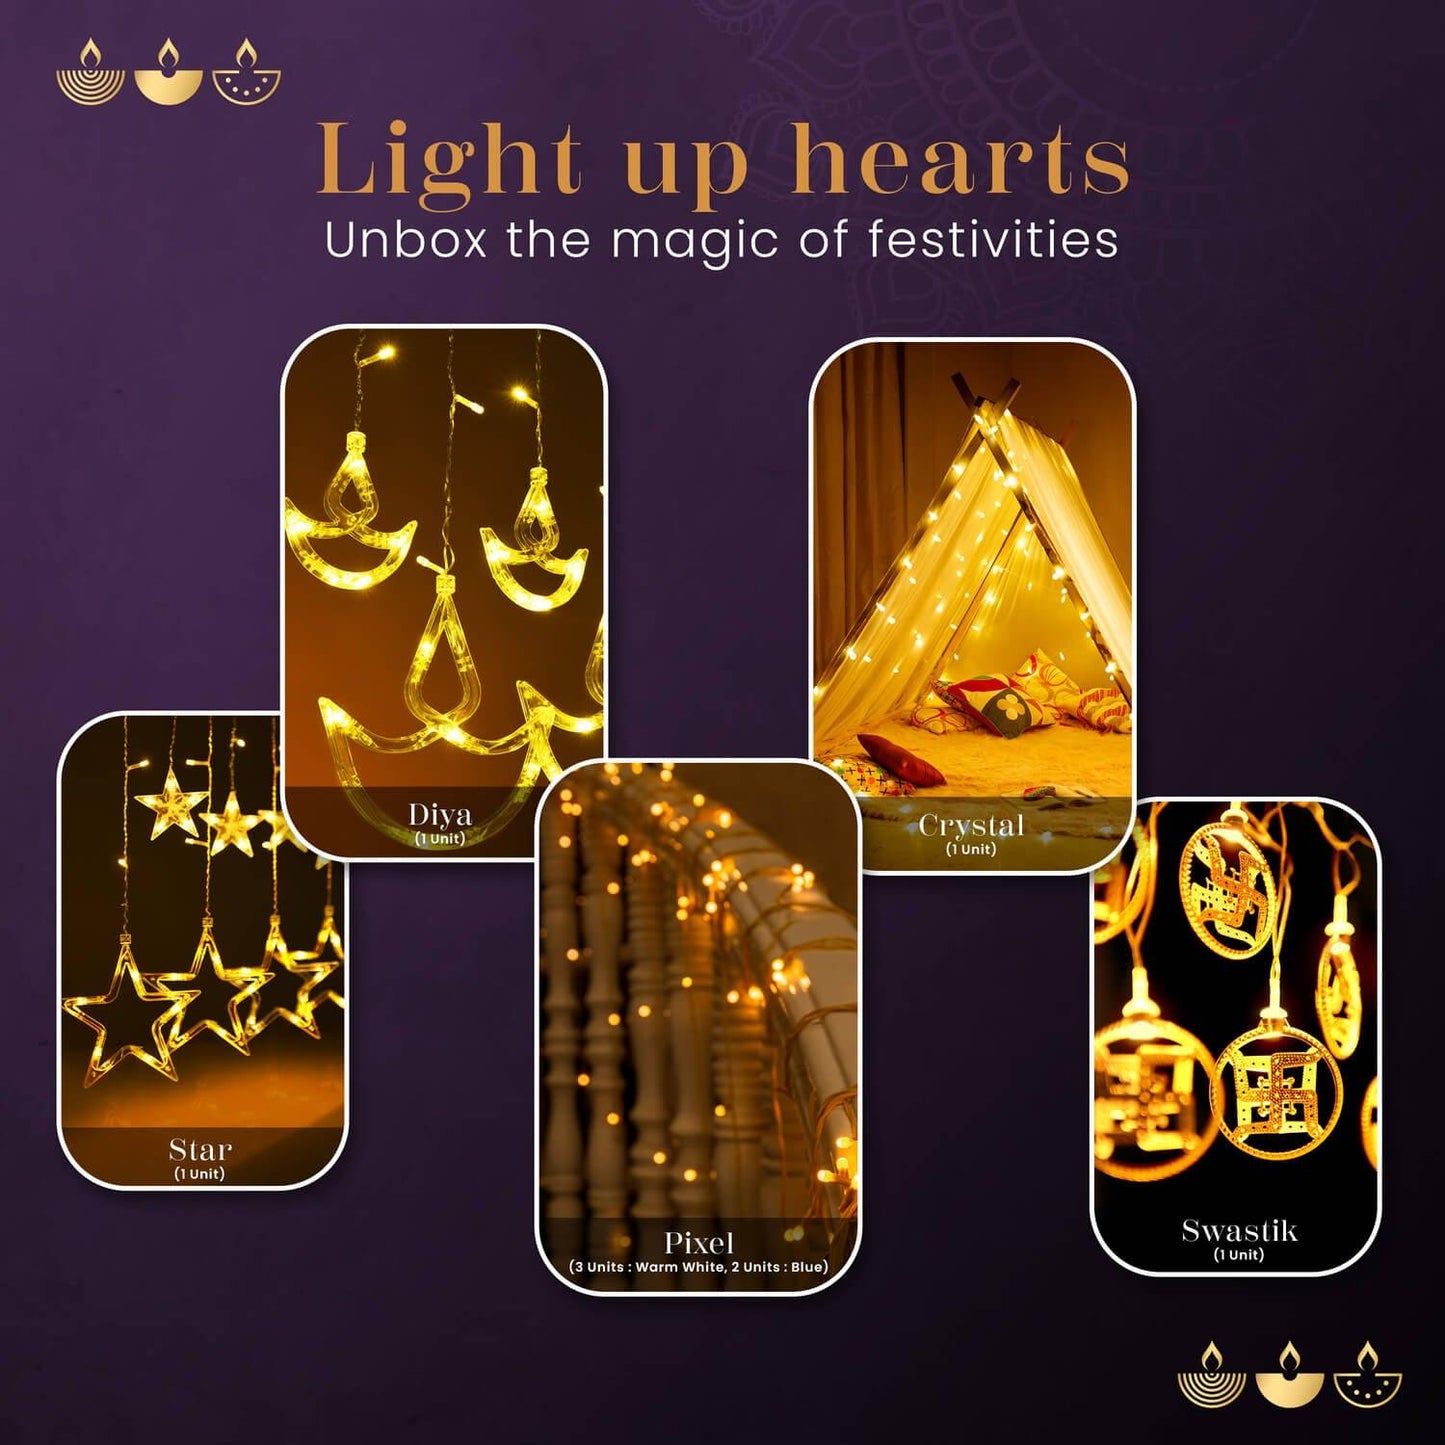 NOOR Diwali Lights Gift Pack of 9 - Orient Electric